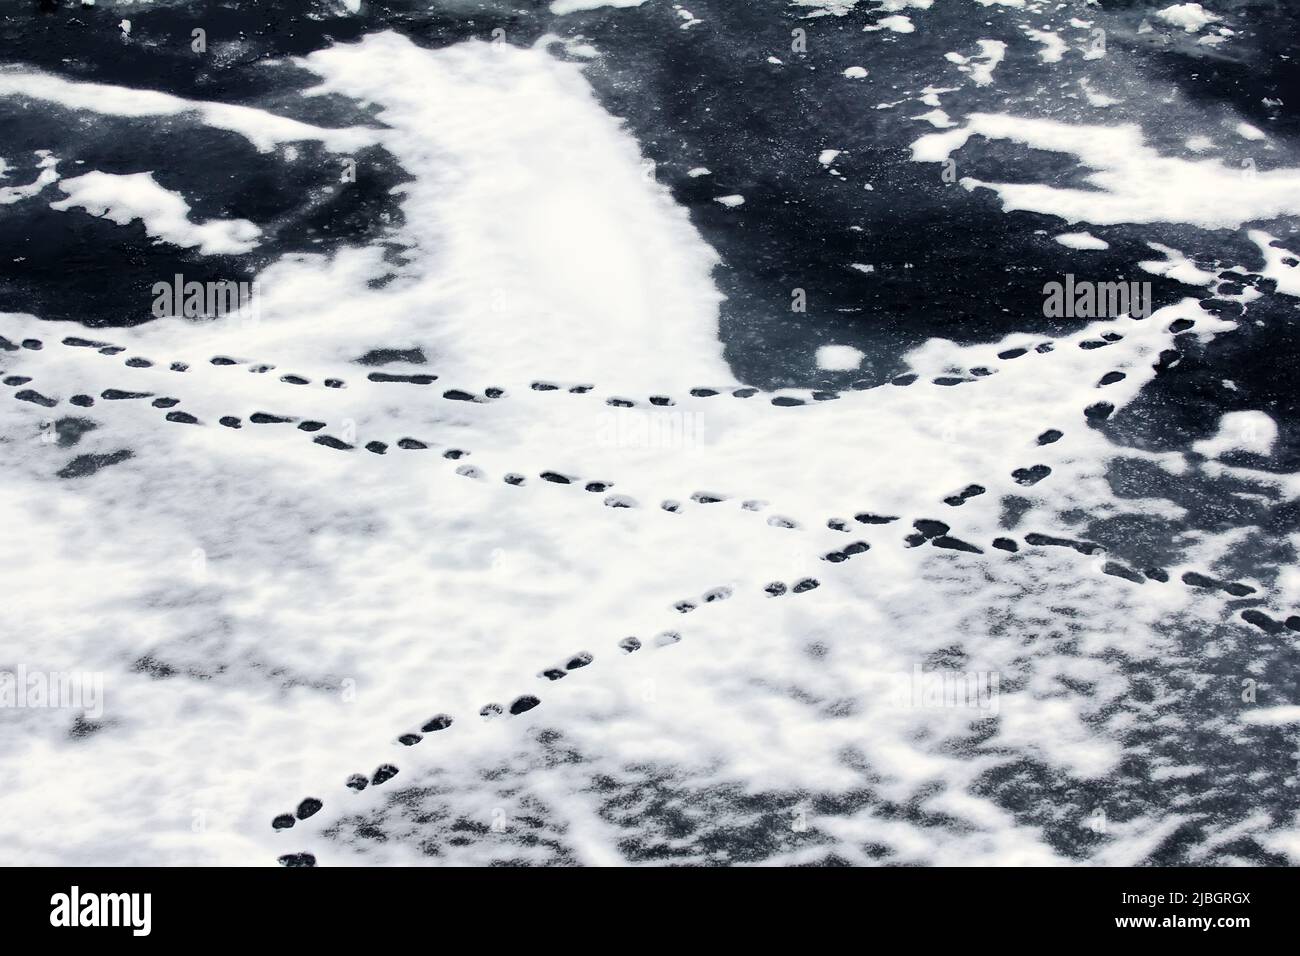 Eisbären Spuren im nassen Schnee. Arktischer Ozean, anschend. Draufsicht Stockfoto